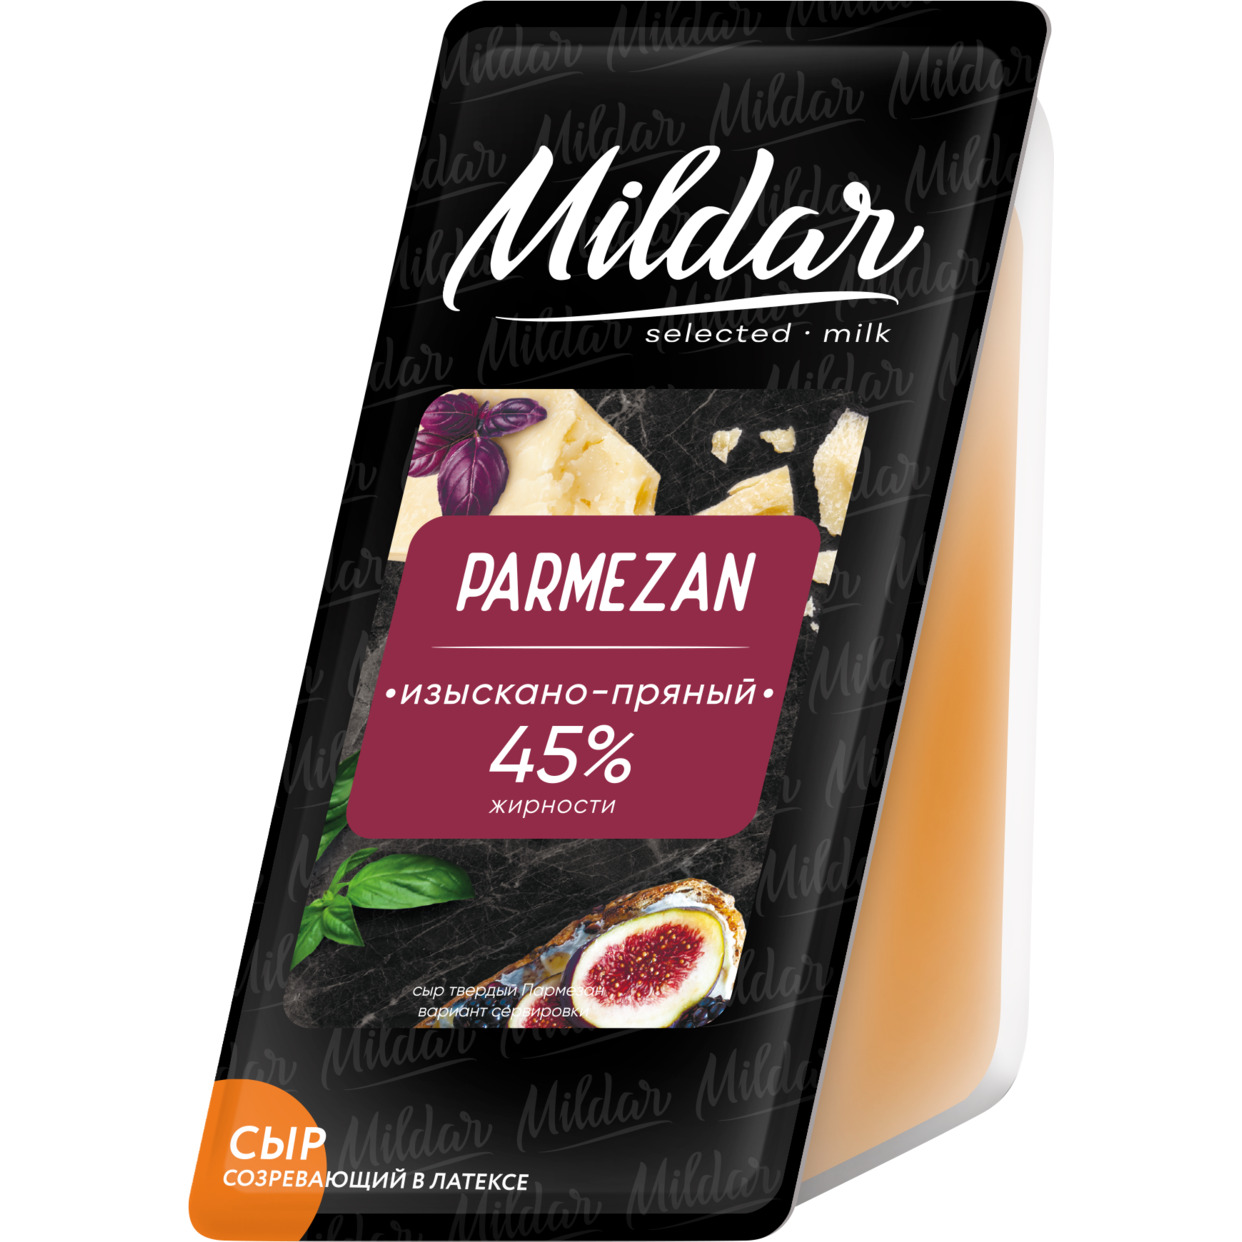 Сыр твердый Пармезан м.д.ж. 45% 220 грамм по акции в Пятерочке